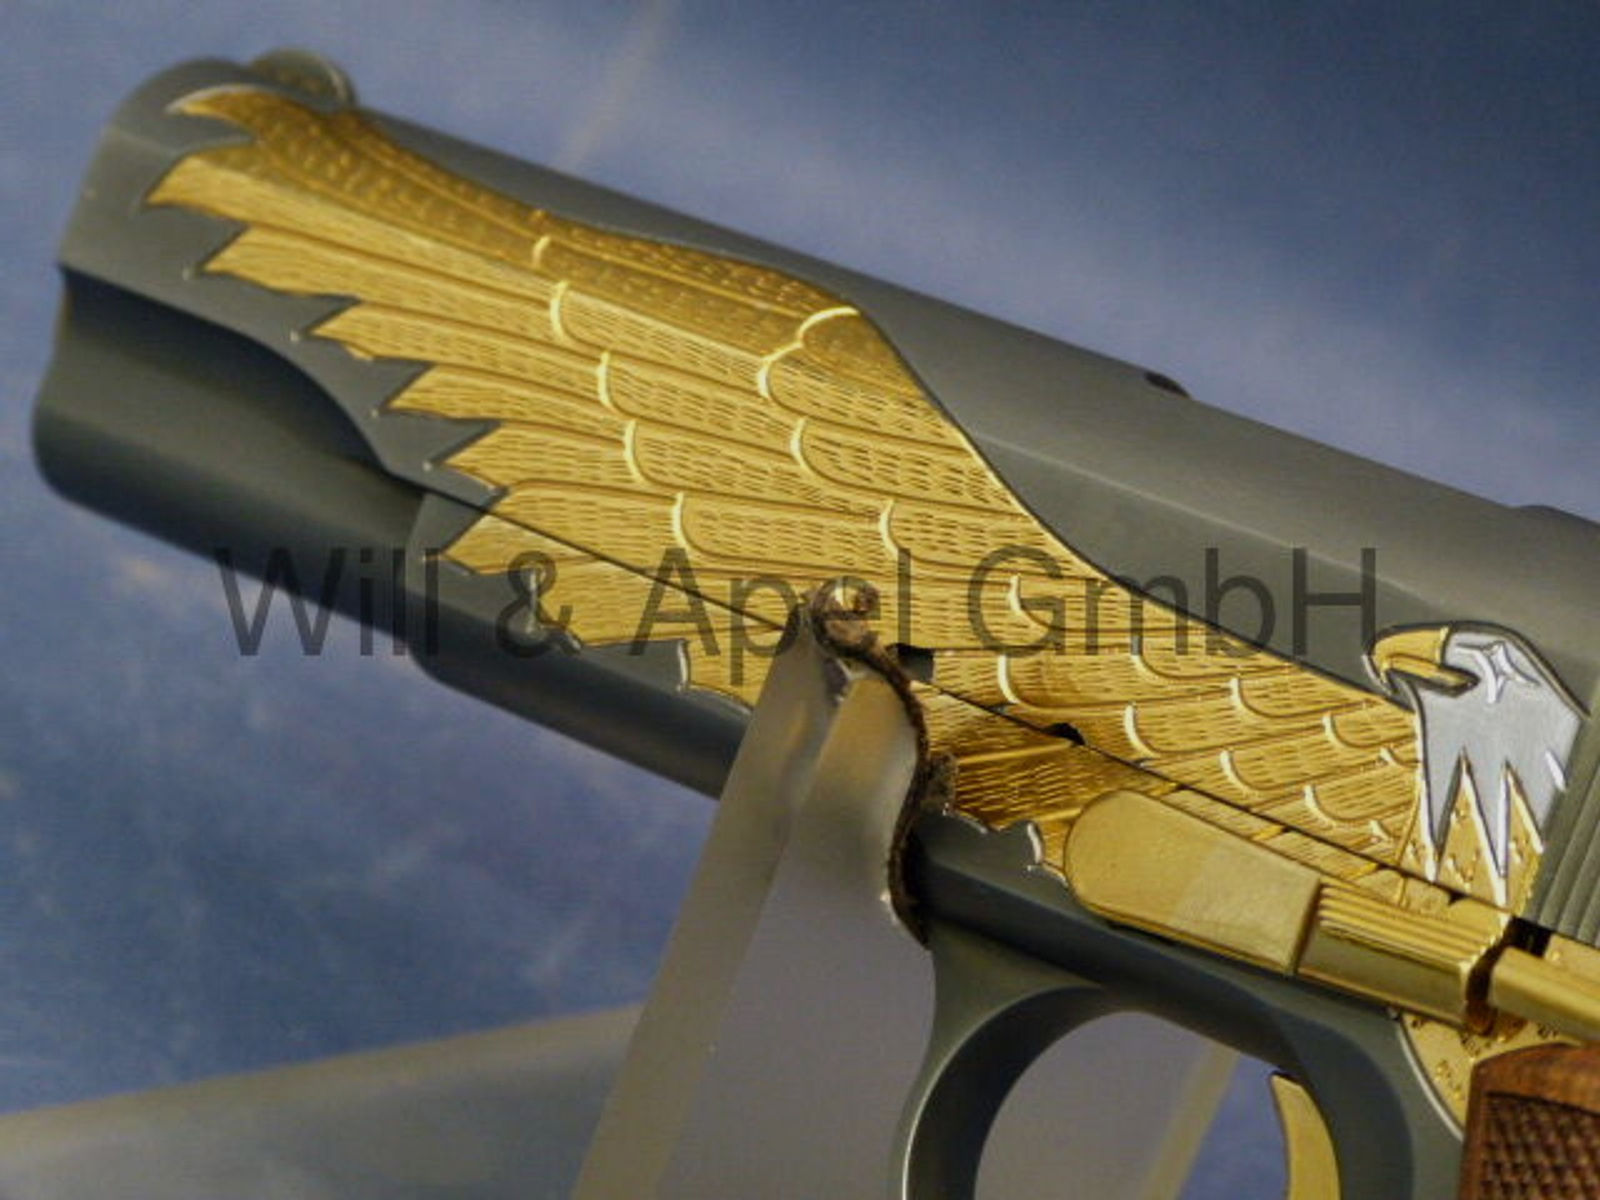 Tisas	 ZIG M1911 GOLDEN EAGLE